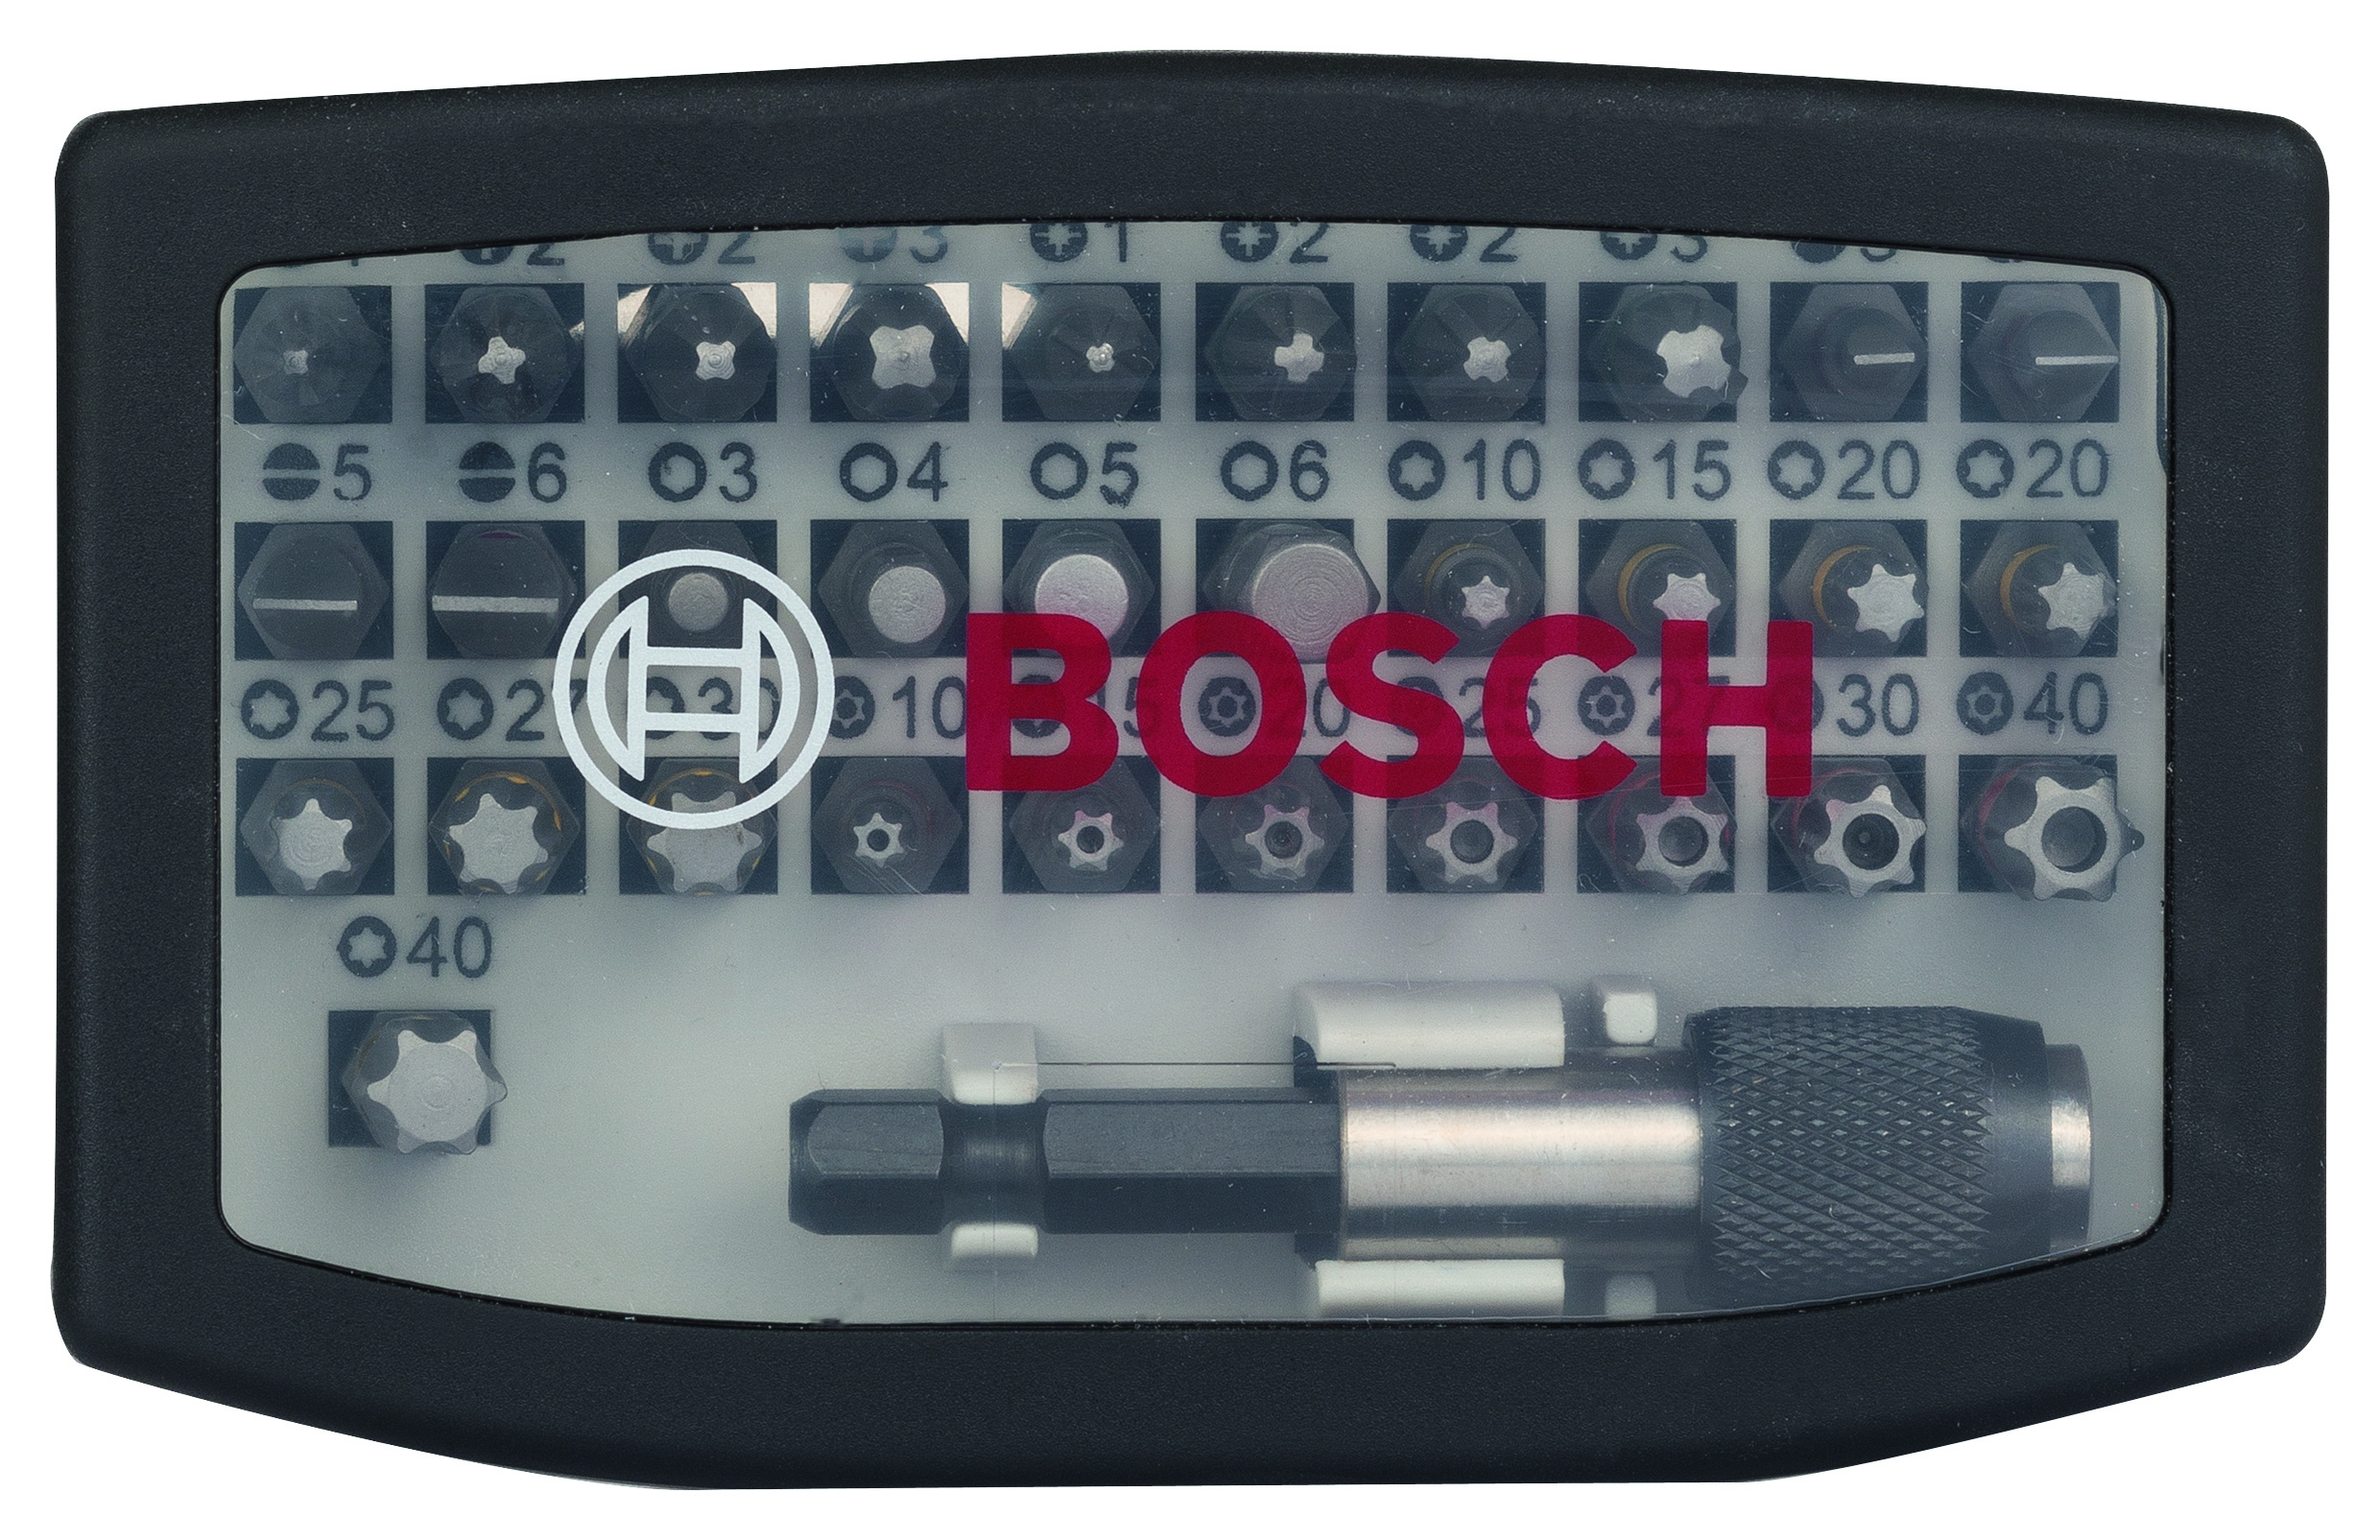 BOSCH Schrauberbit-Set Pro 32-tlg. PH/PZ/SL/HEX/T/TH mit Uni-Halter in Box